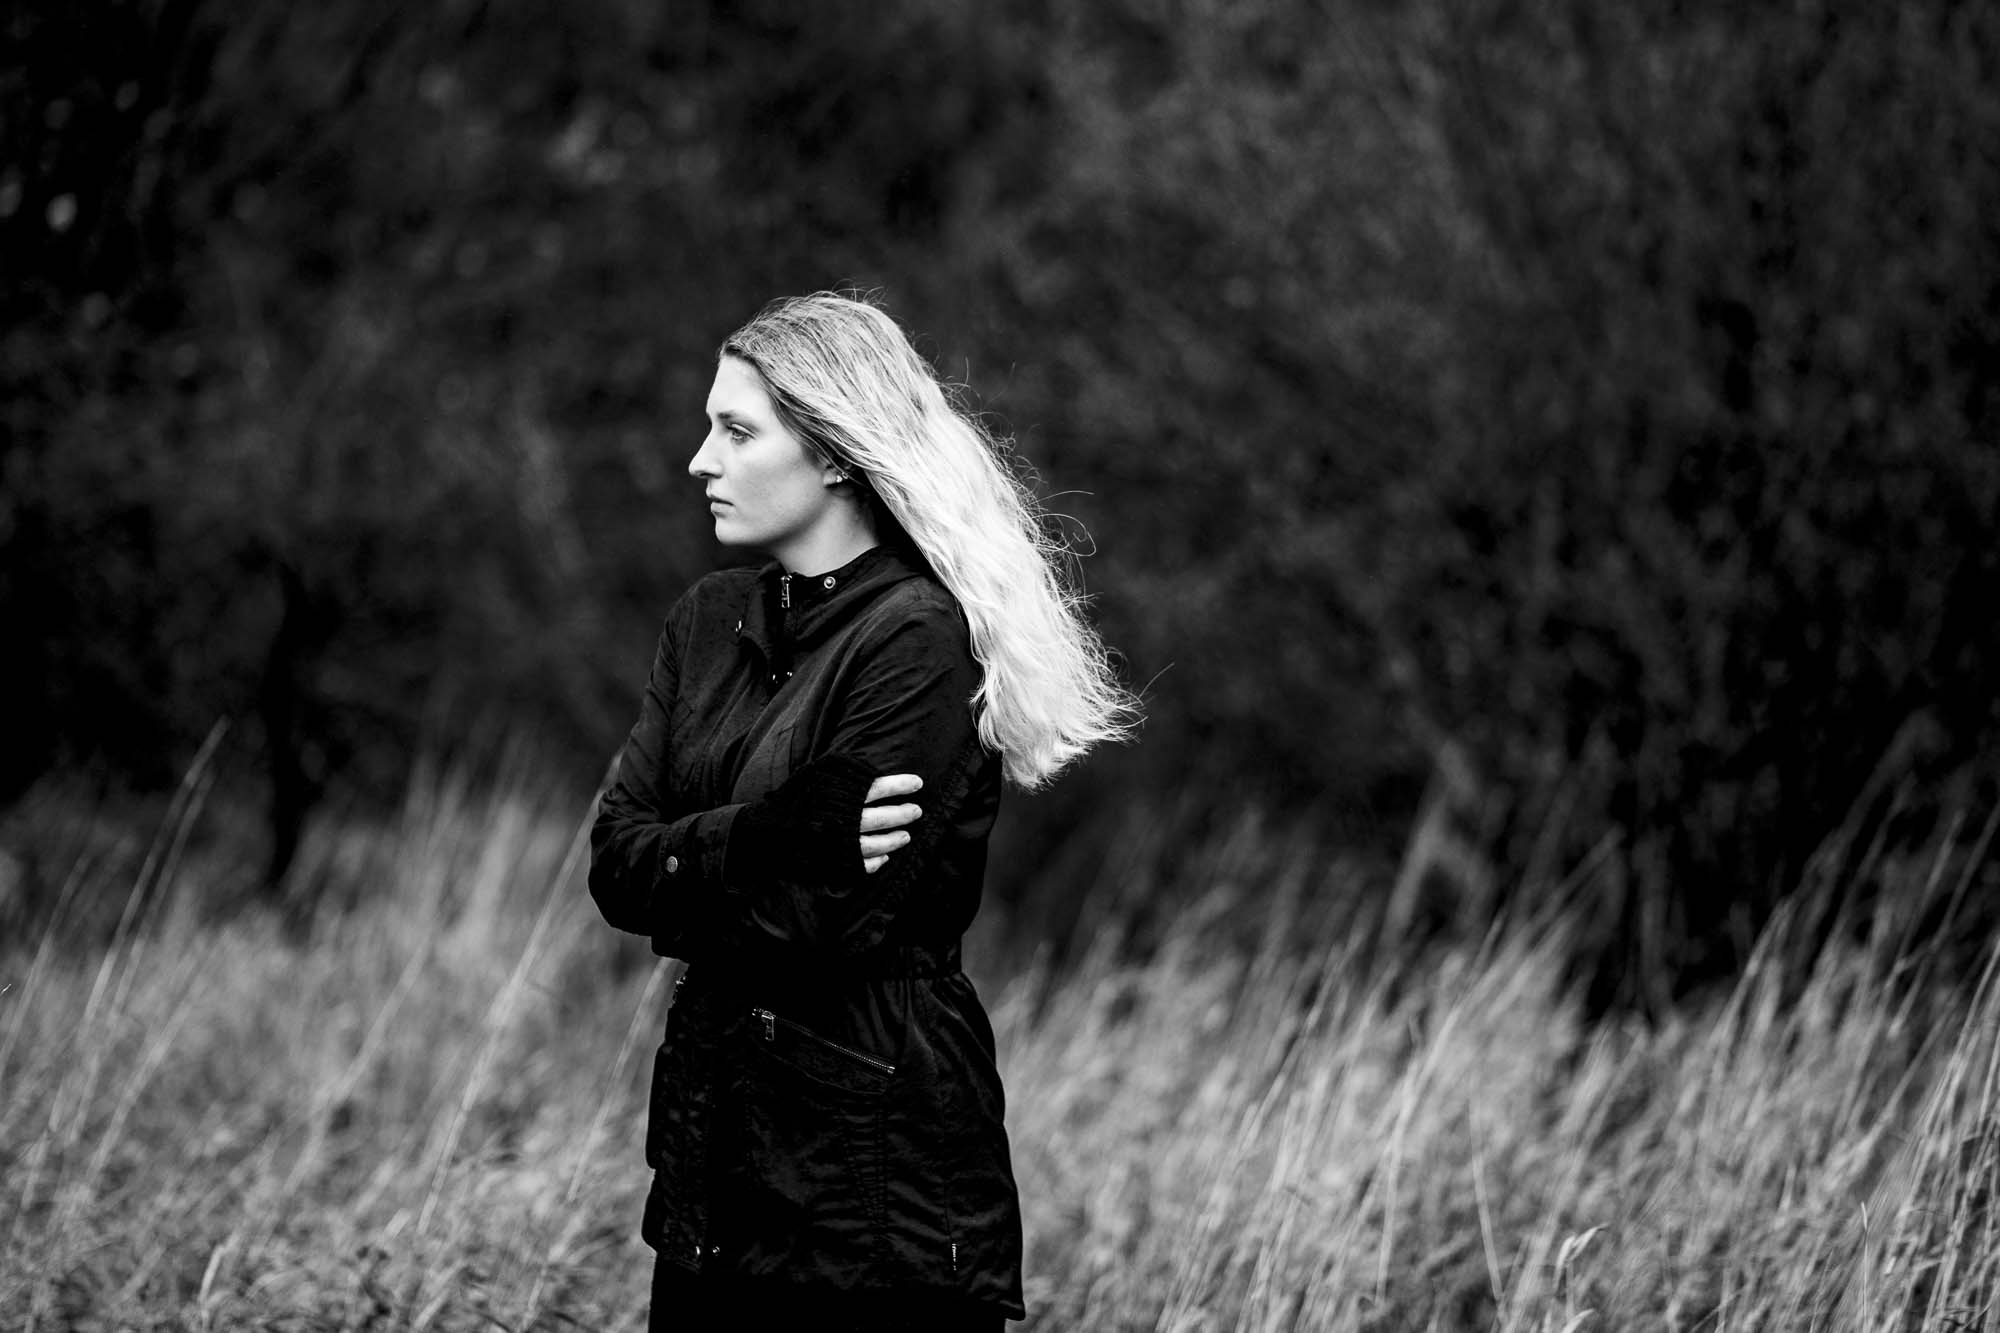 Frauen-Portrait in schwarz-weiß von Rosa Engel Fotografin in Aachen